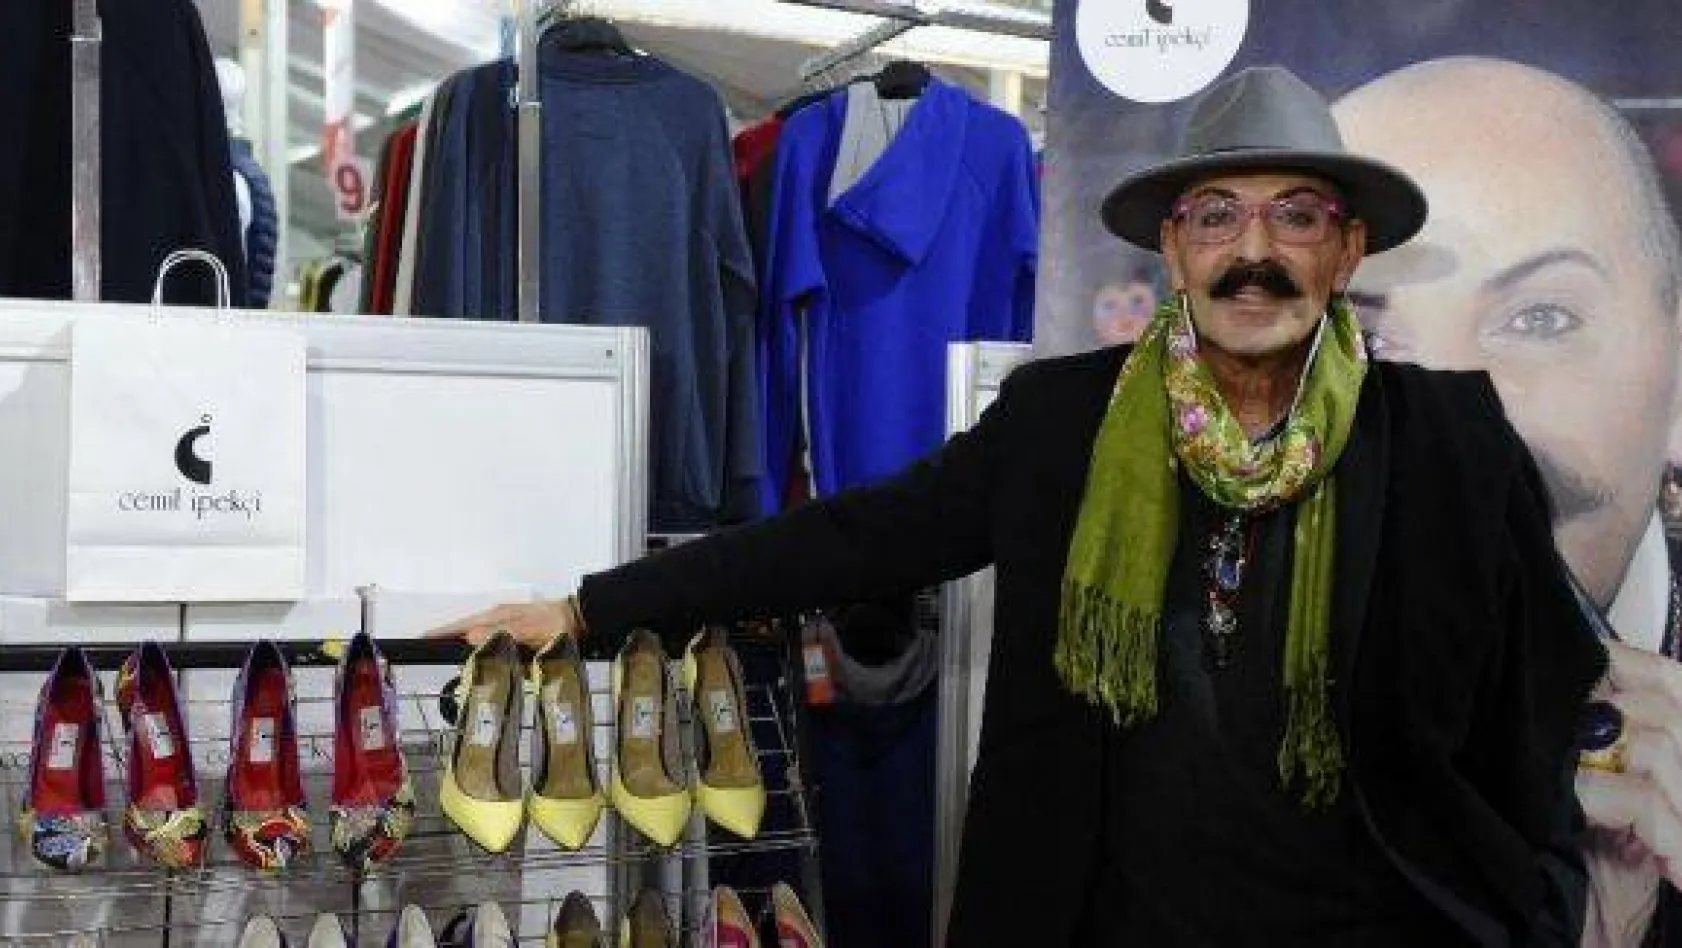 Ünlü modacı Cemil İpekçi: ''İndirim çadırlarını kaçırmayın, büyük fırsat''